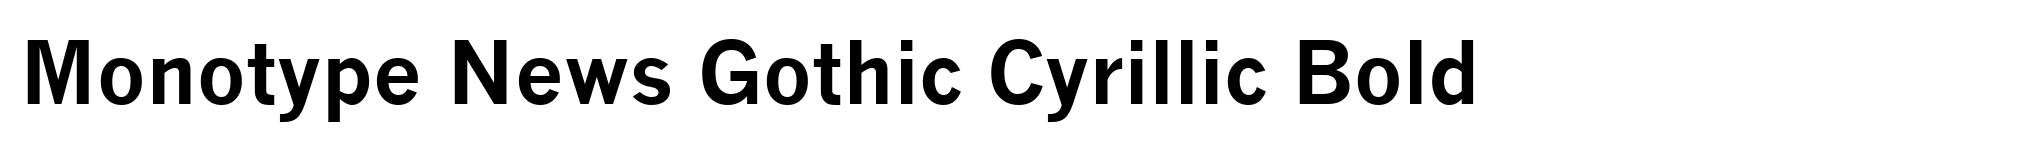 Monotype News Gothic Cyrillic Bold image